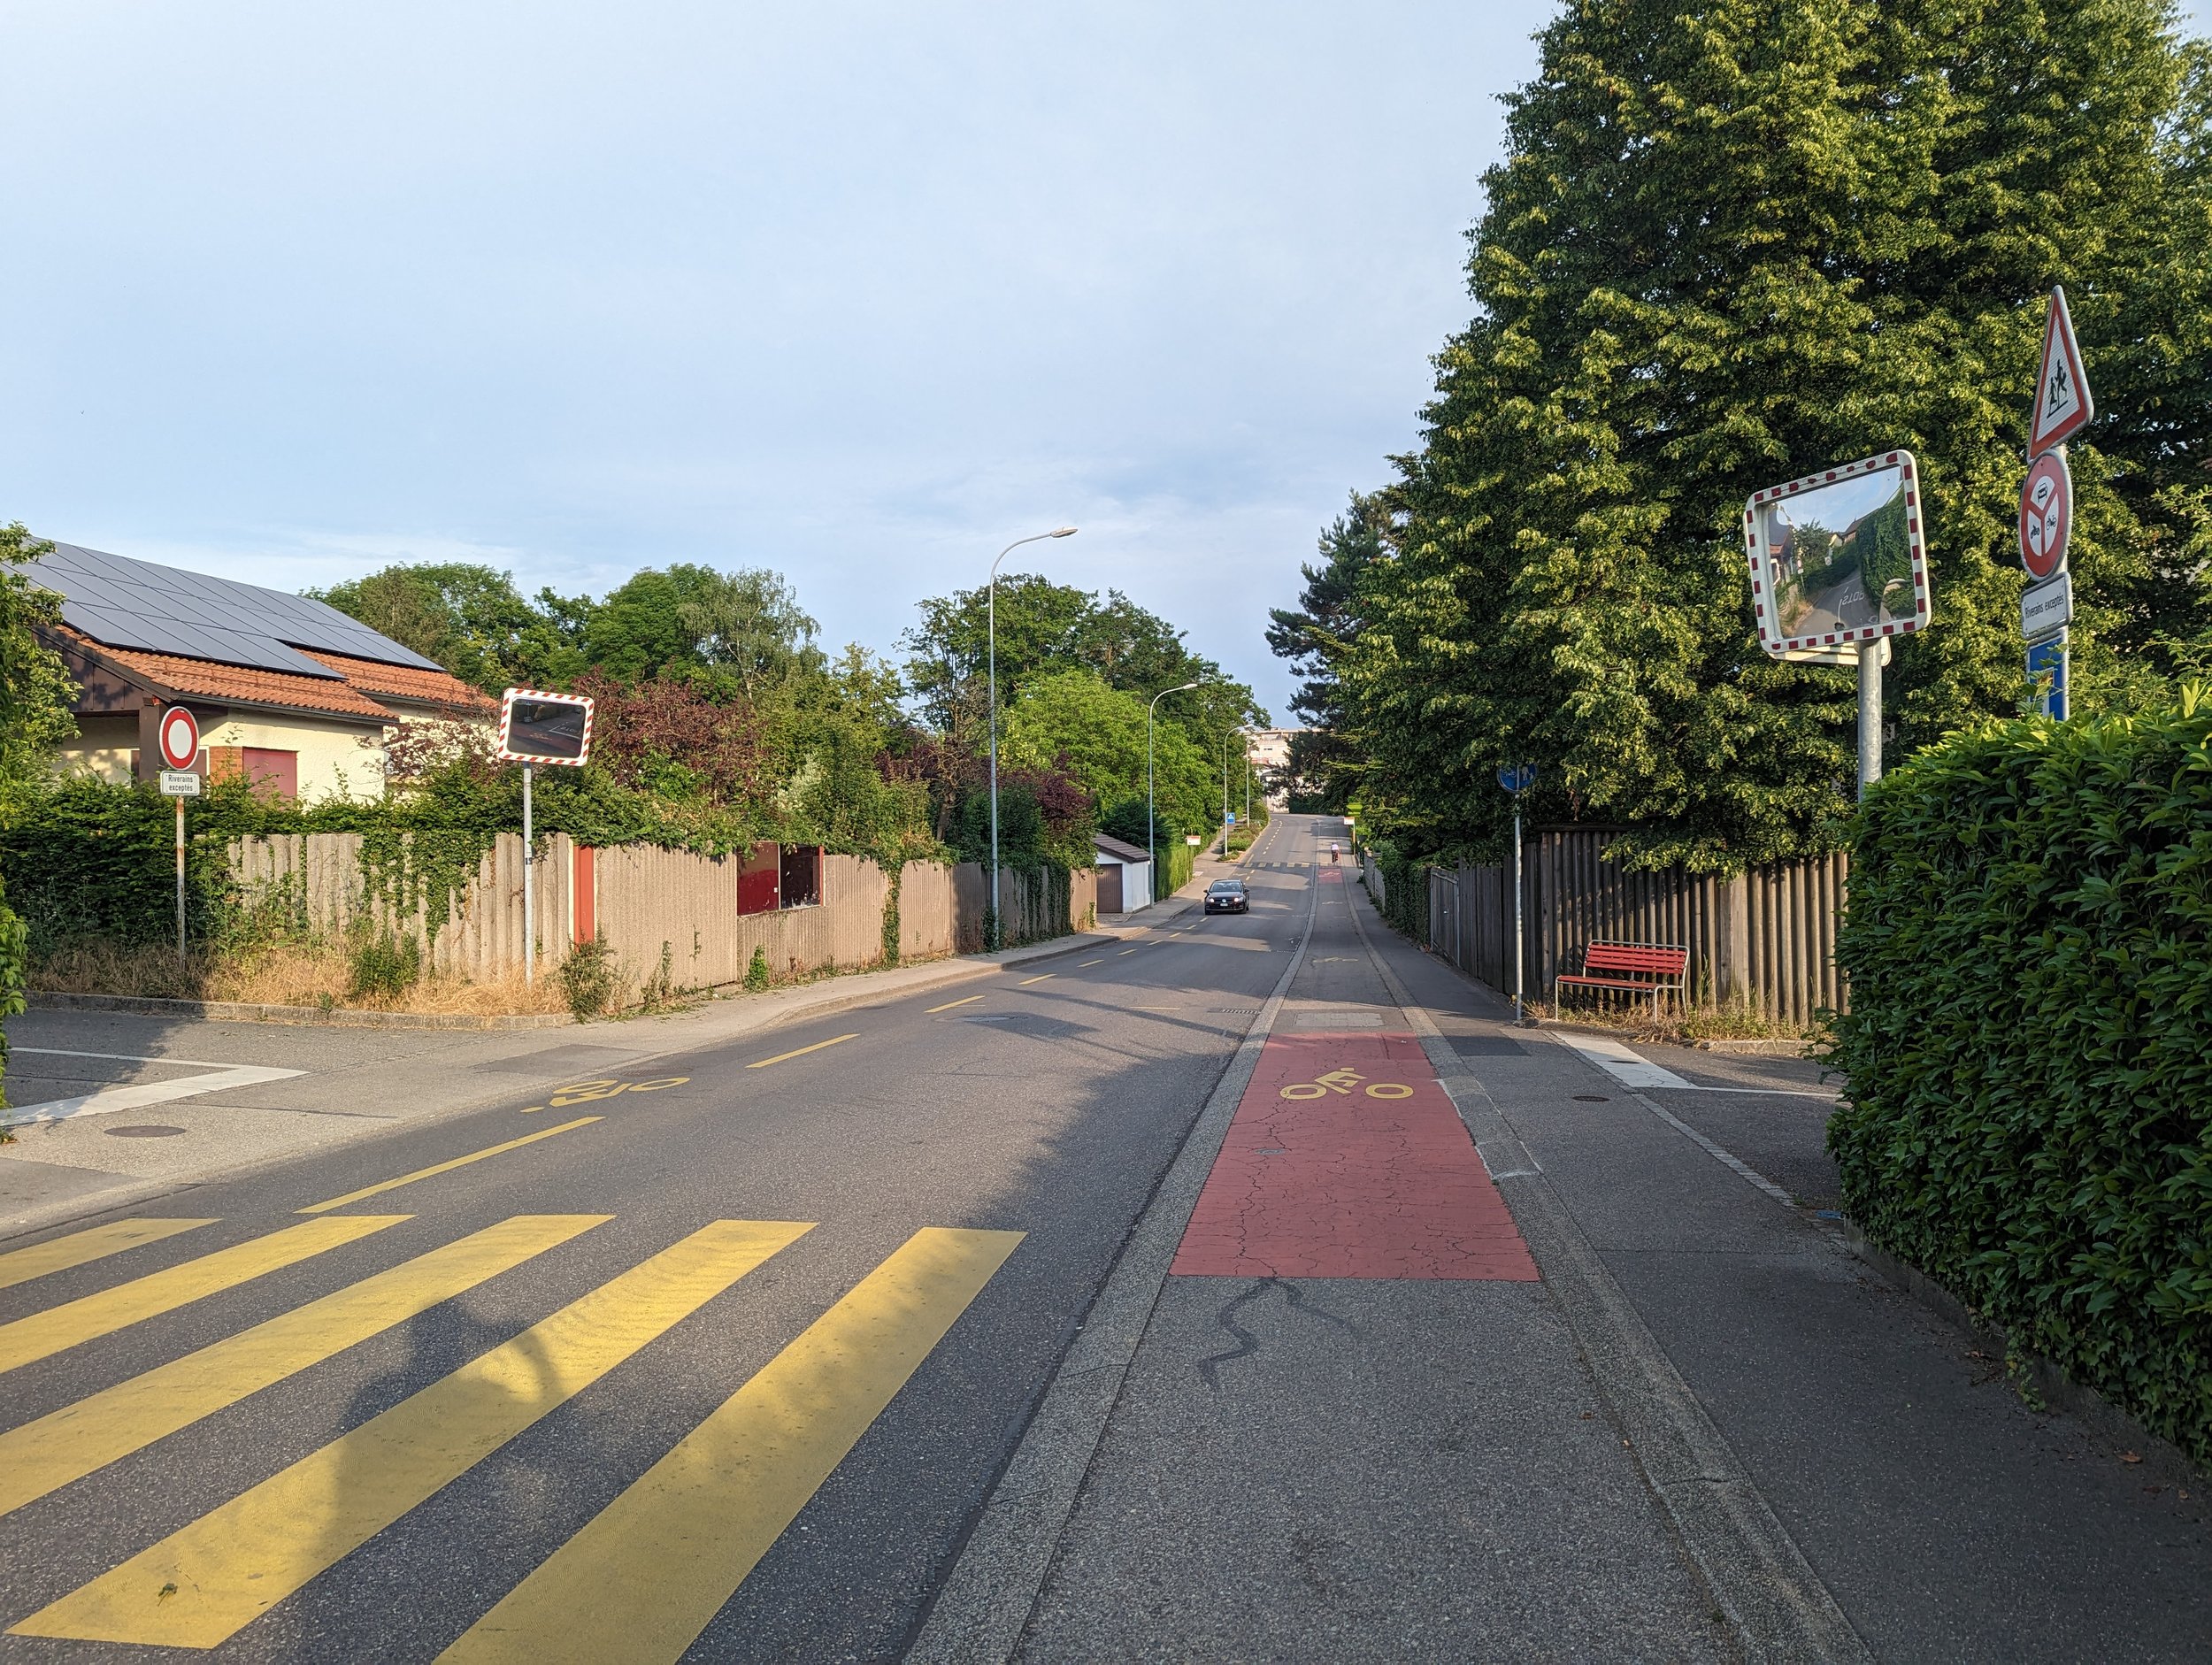 Bike paths in Geneva